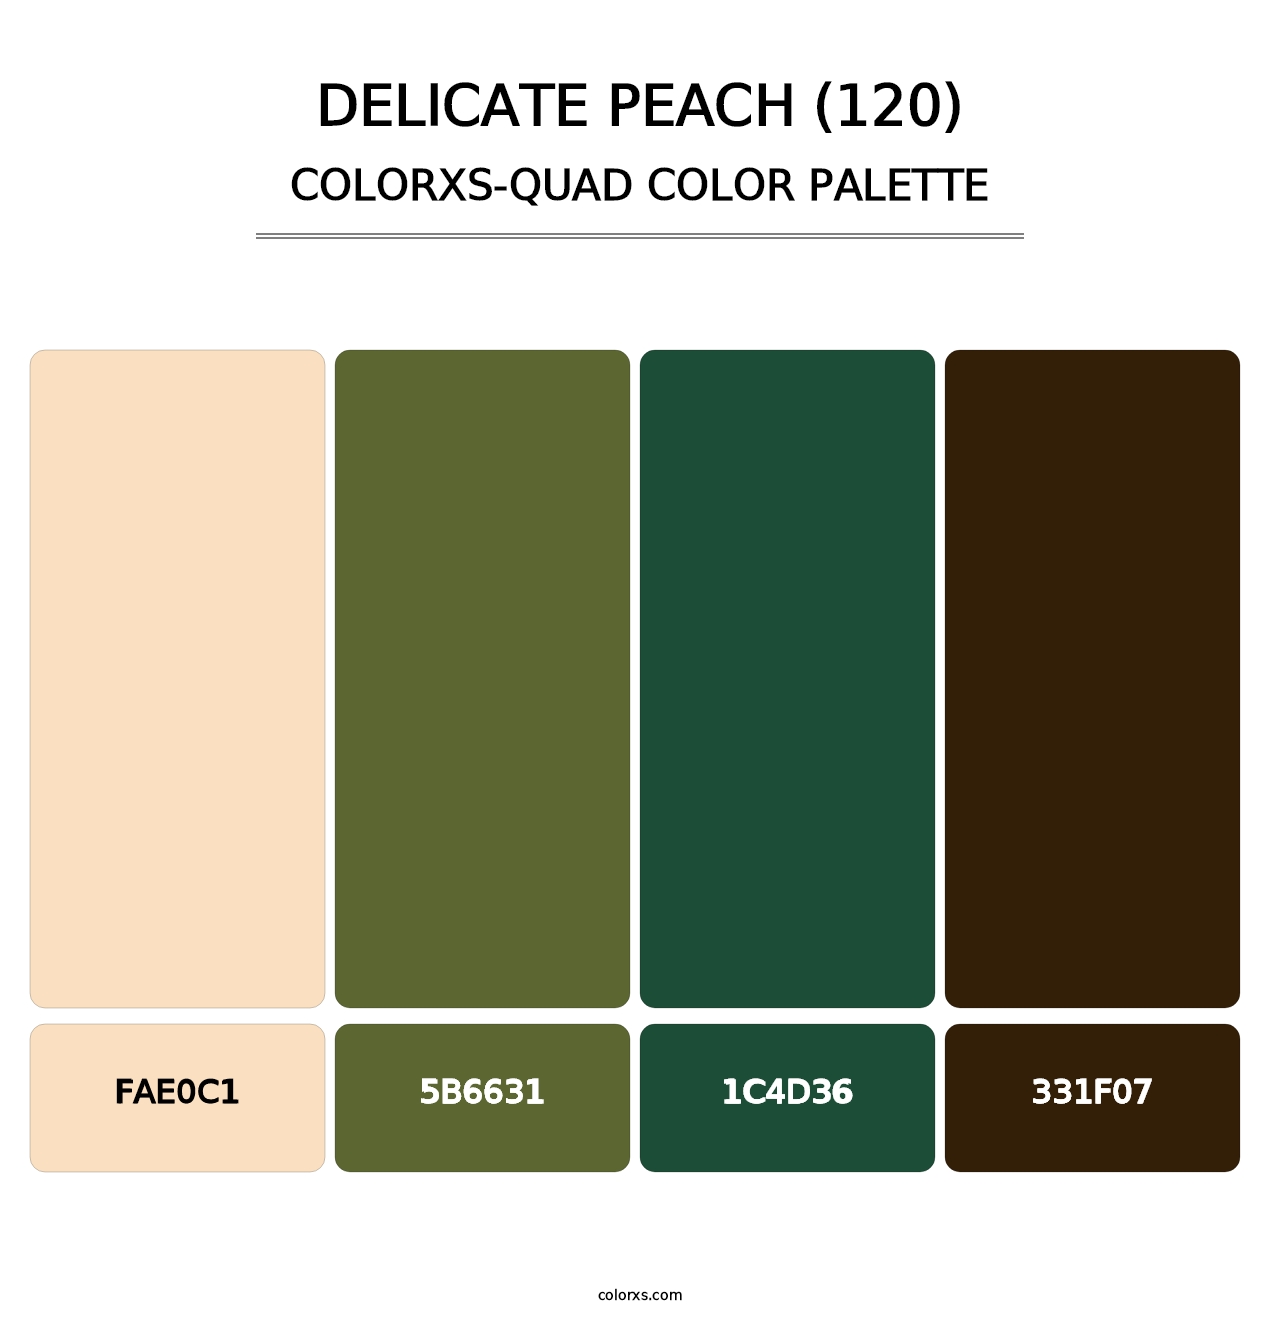 Delicate Peach (120) - Colorxs Quad Palette